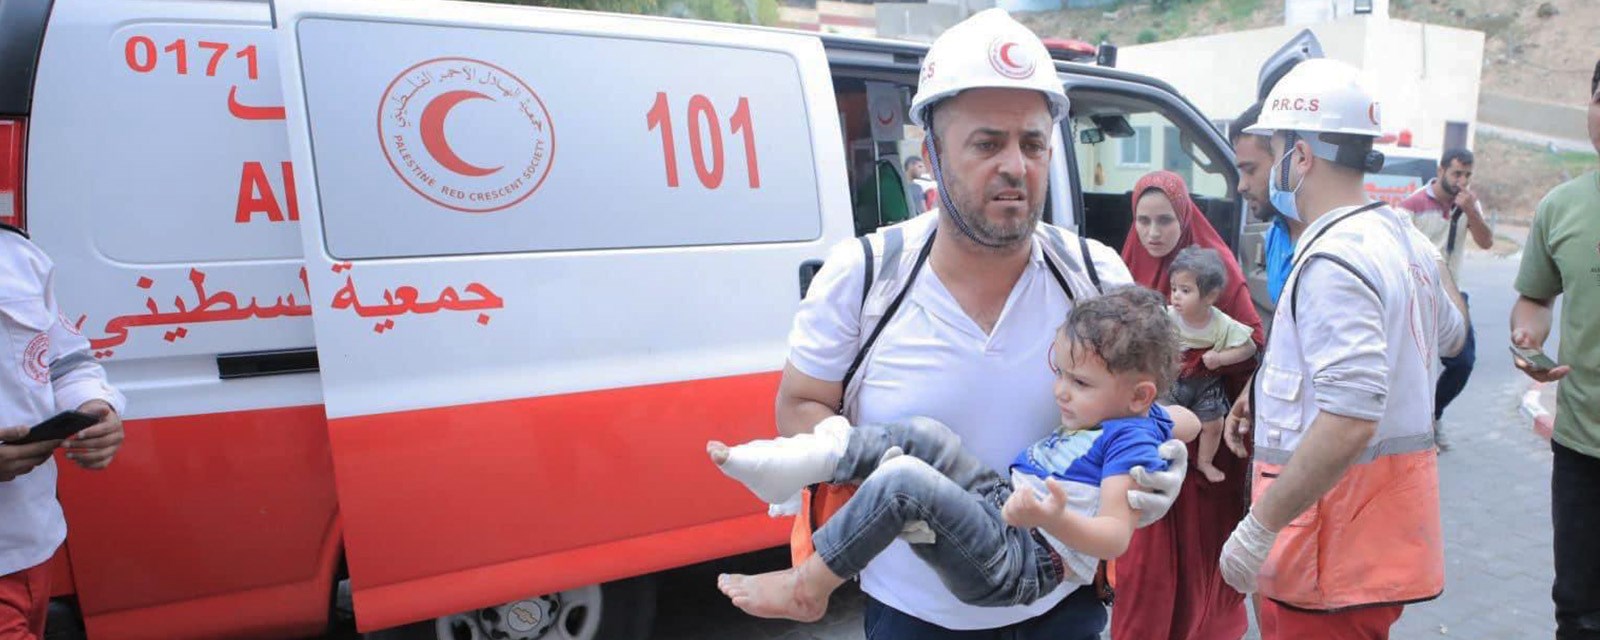 En mann løper ut av en ambulanse med et lite barn i armene.